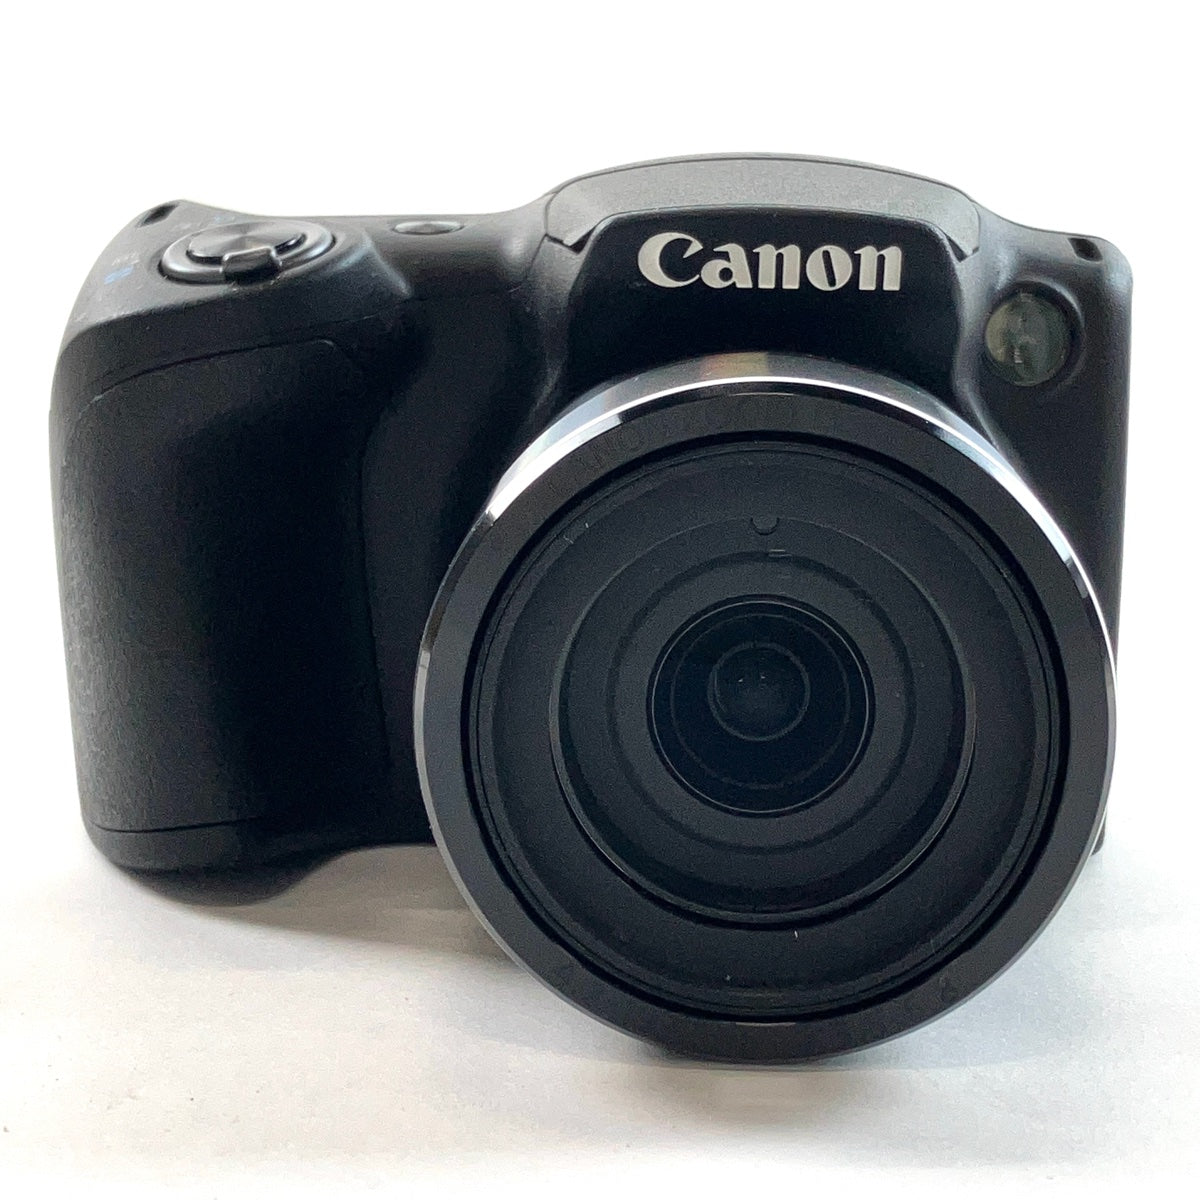 キヤノン Canon キヤノン SX430IS デジタルカメラ